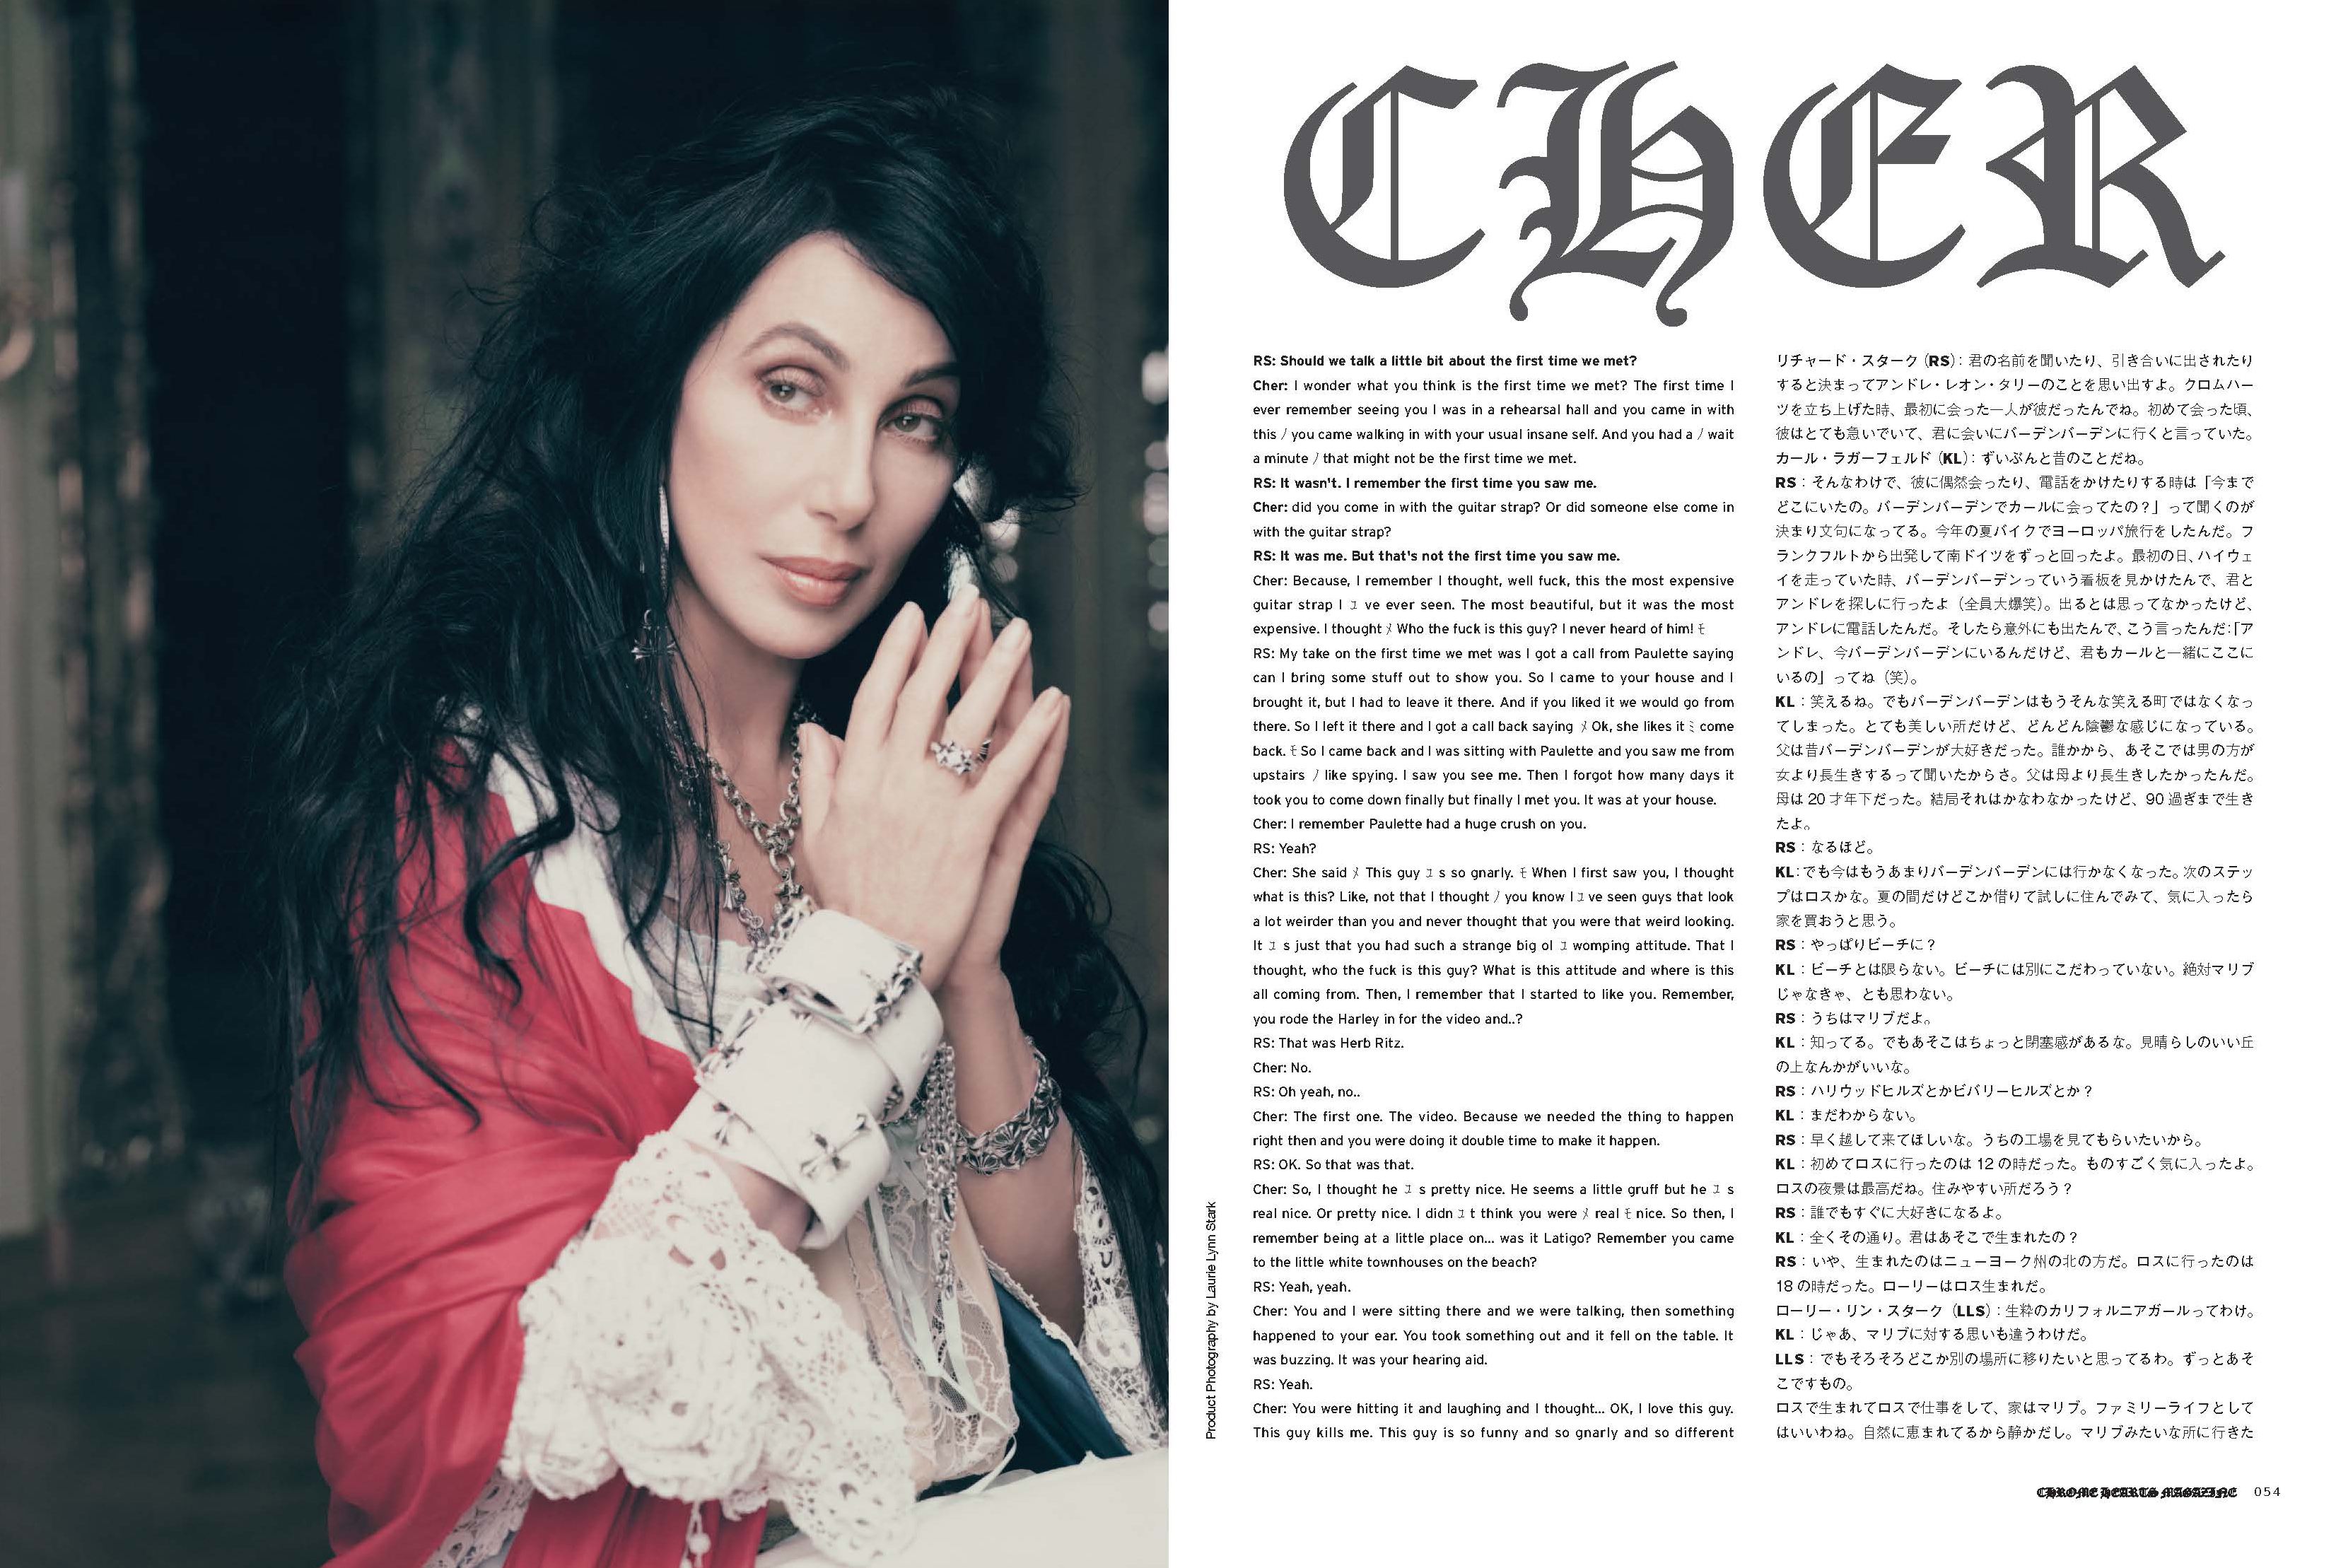 Chrome Hearts Magazine Cher series 1 version 7